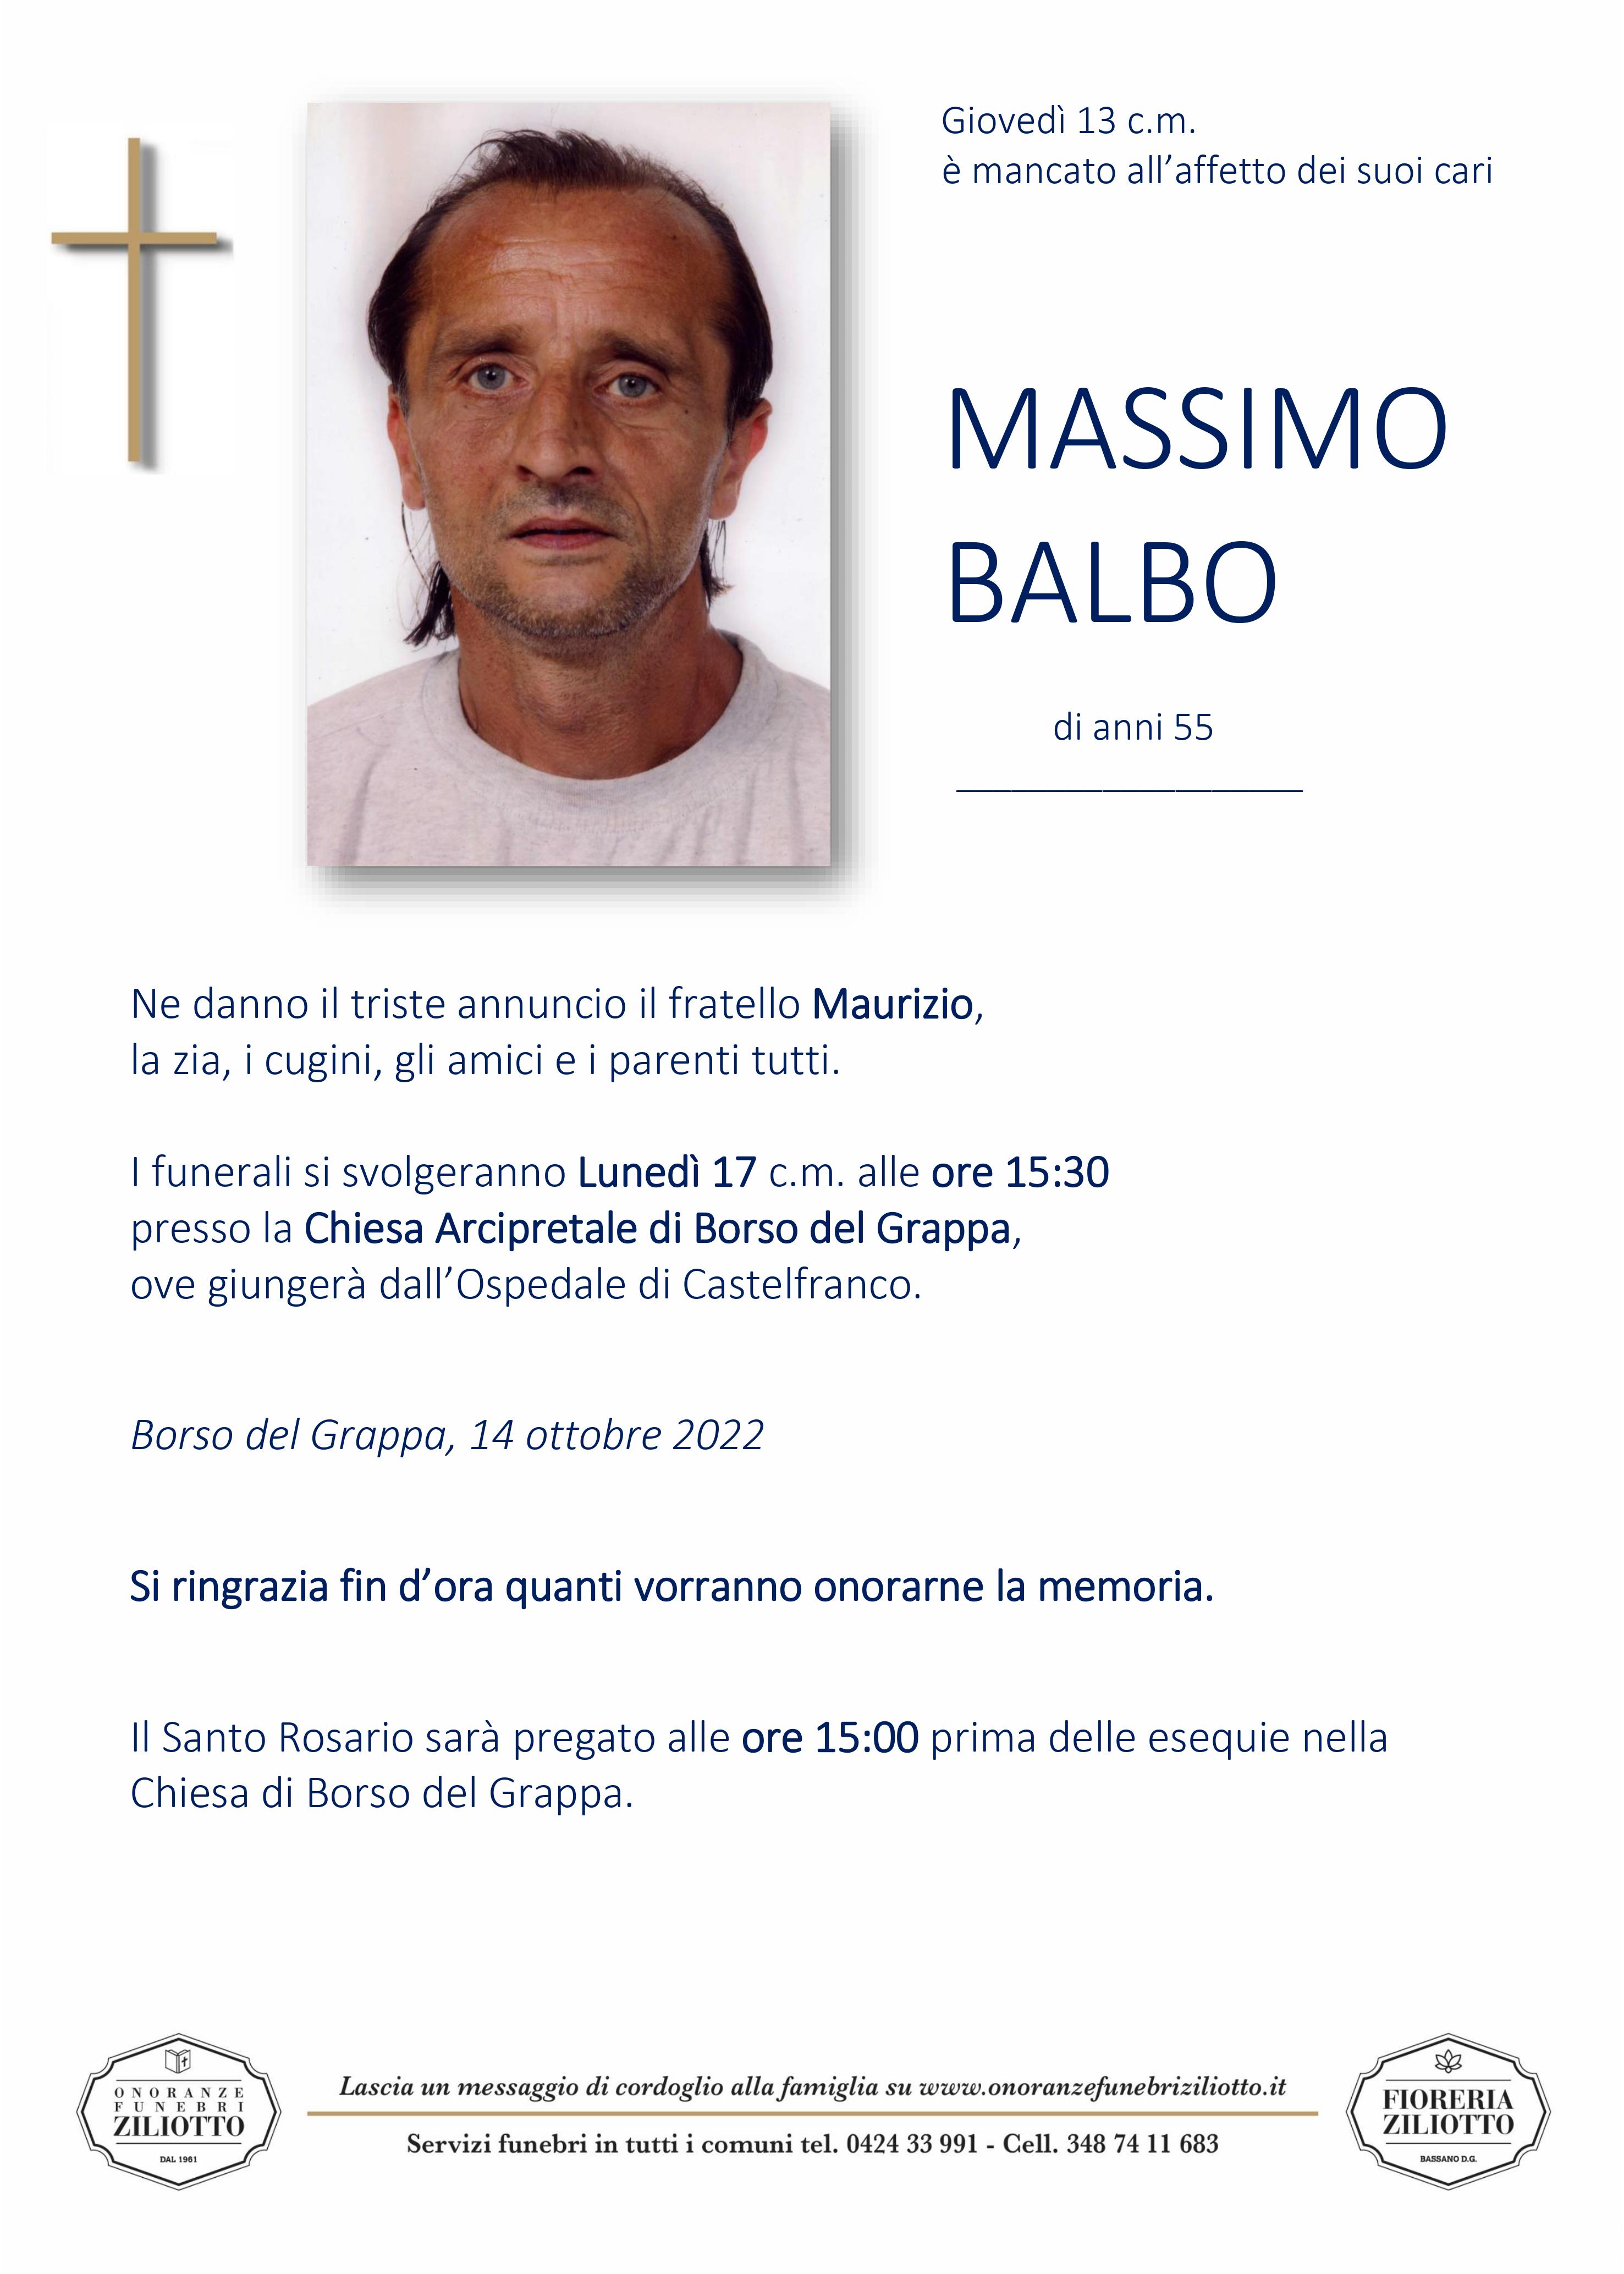 Massimo Balbo - 55 anni - Borso del Grappa